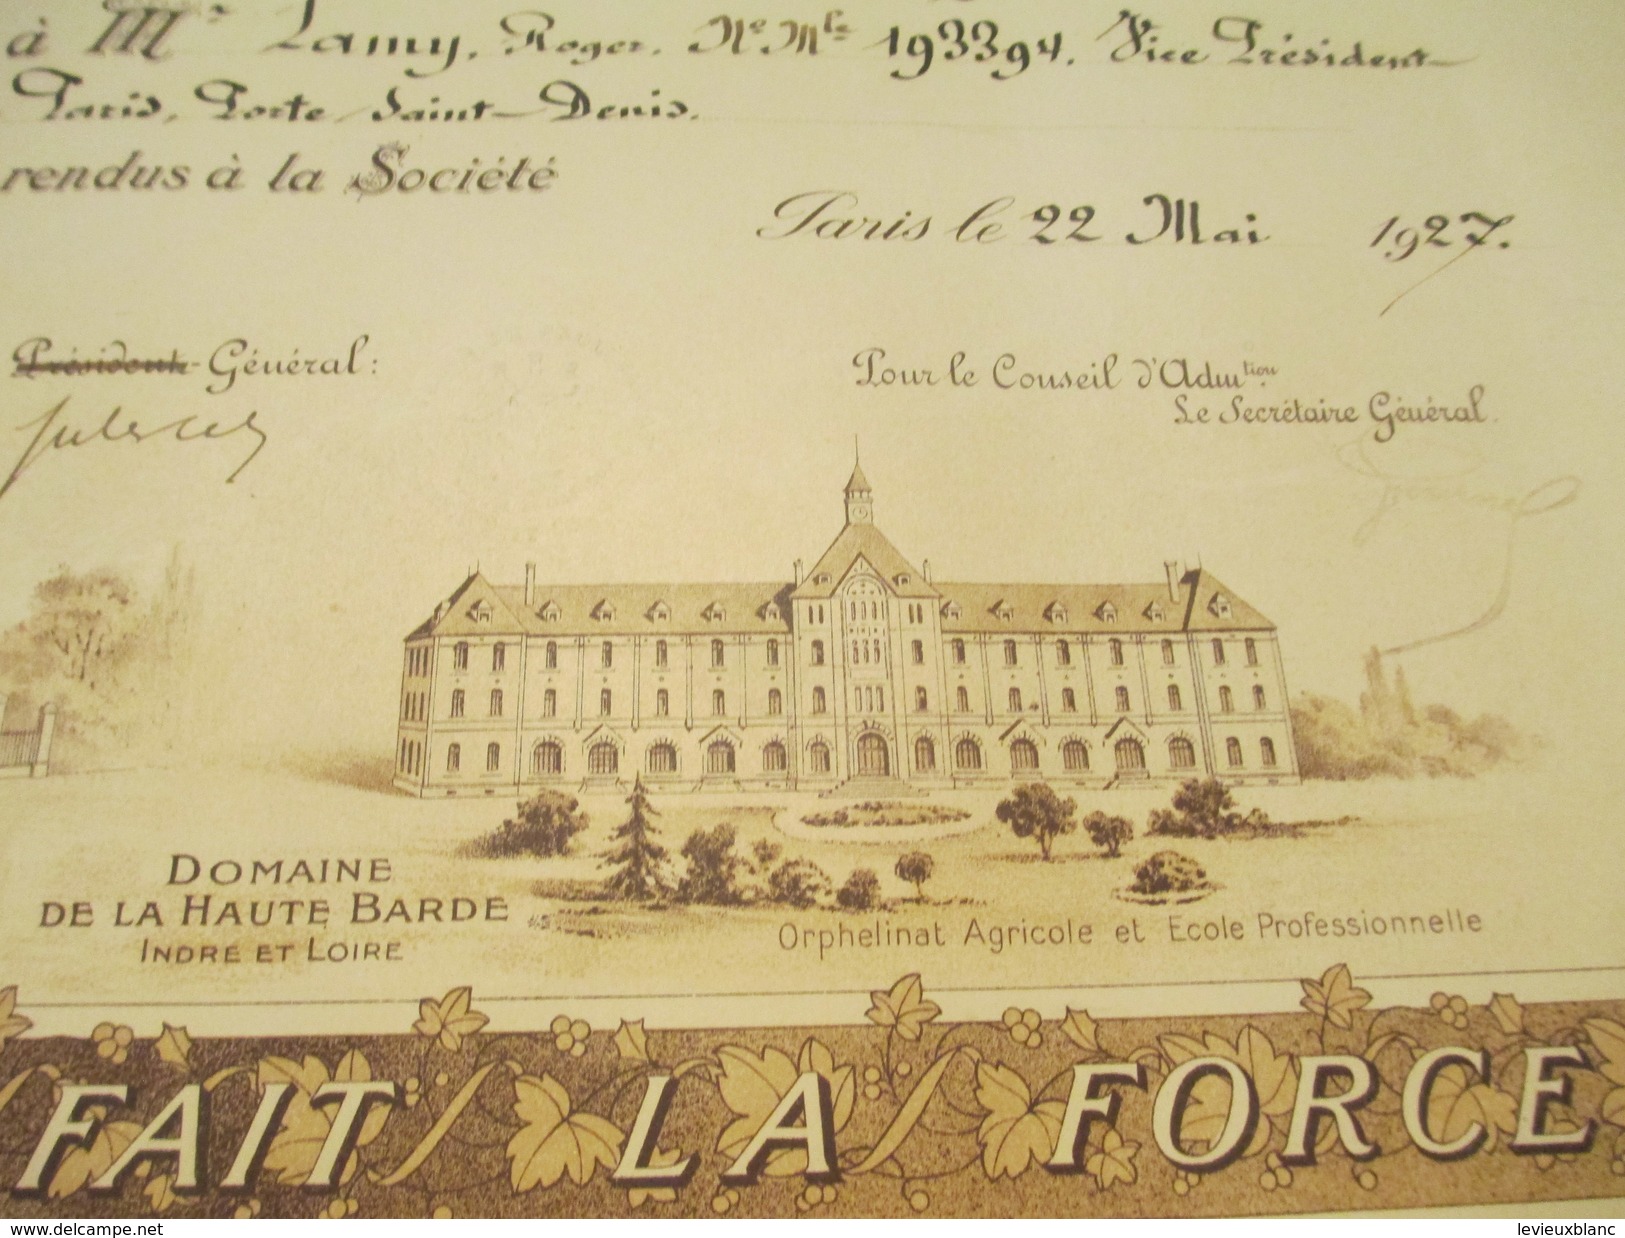 Diplôme/Médaille De Bronze/L'Avenir Du Prolétariat/Soc.Civ./Comité De Paris/Roger LAMY/Boire Fondateur/1927   DIP192 - Diplome Und Schulzeugnisse